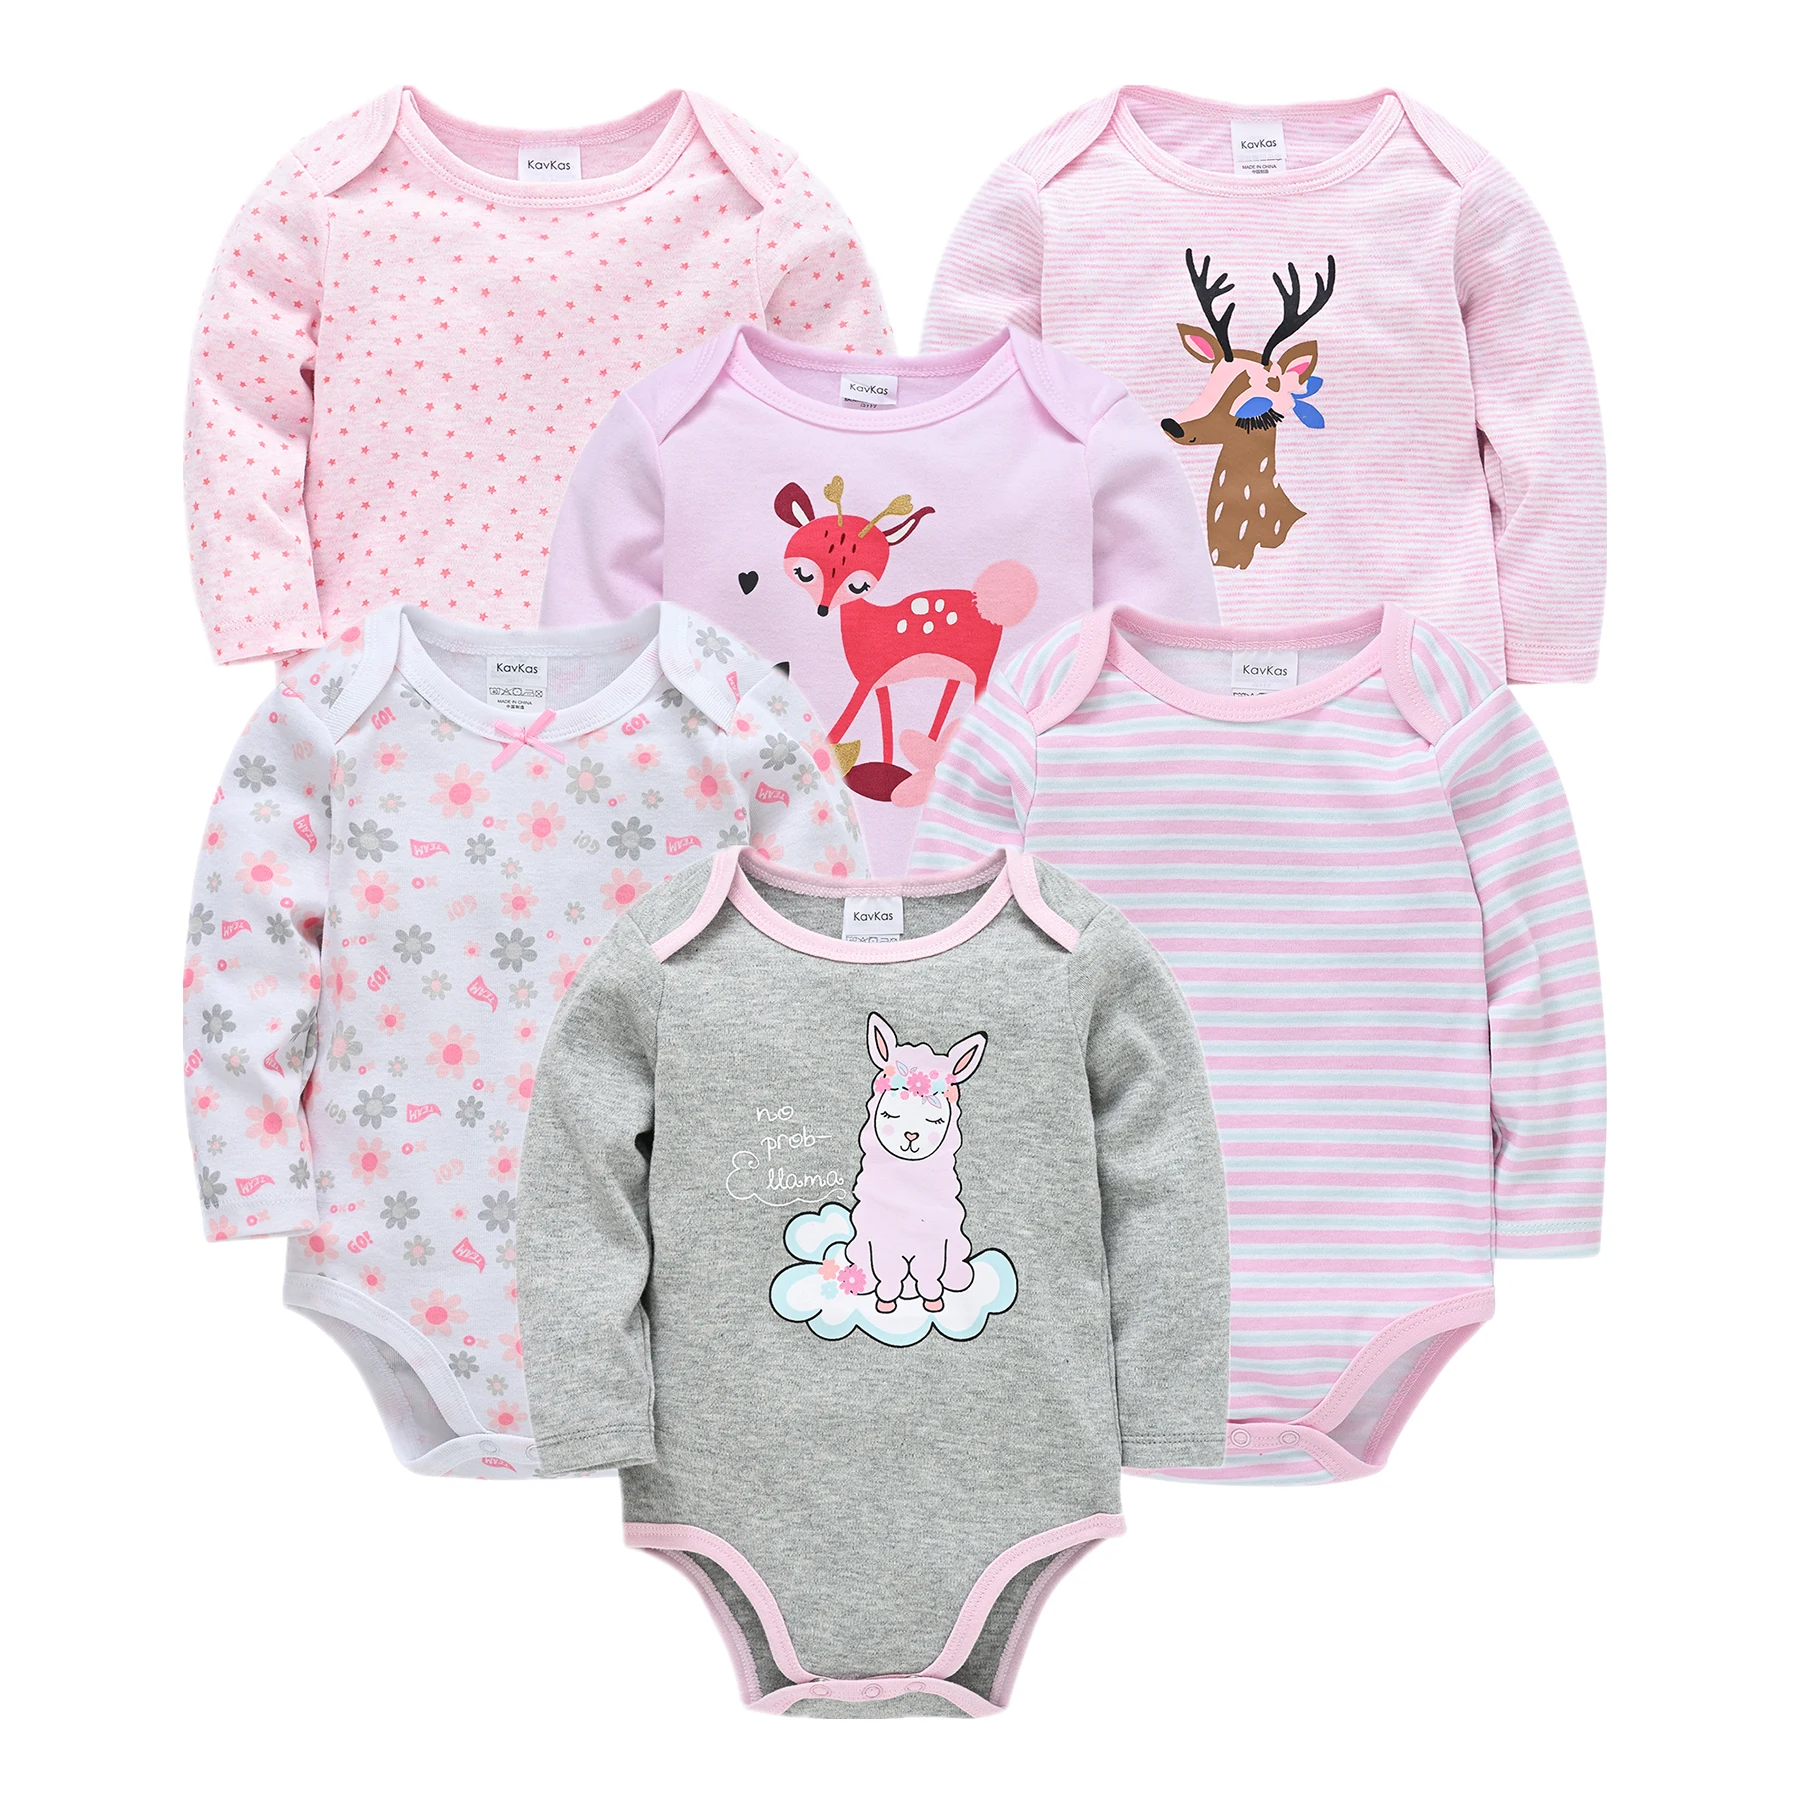 

Infant Baby Girls Pyjama Autumn 100%Cotton Newborn Baby Boys Girls Clothes 3 6PCS Baby Pajamas Unisex Kids Clothing Sets